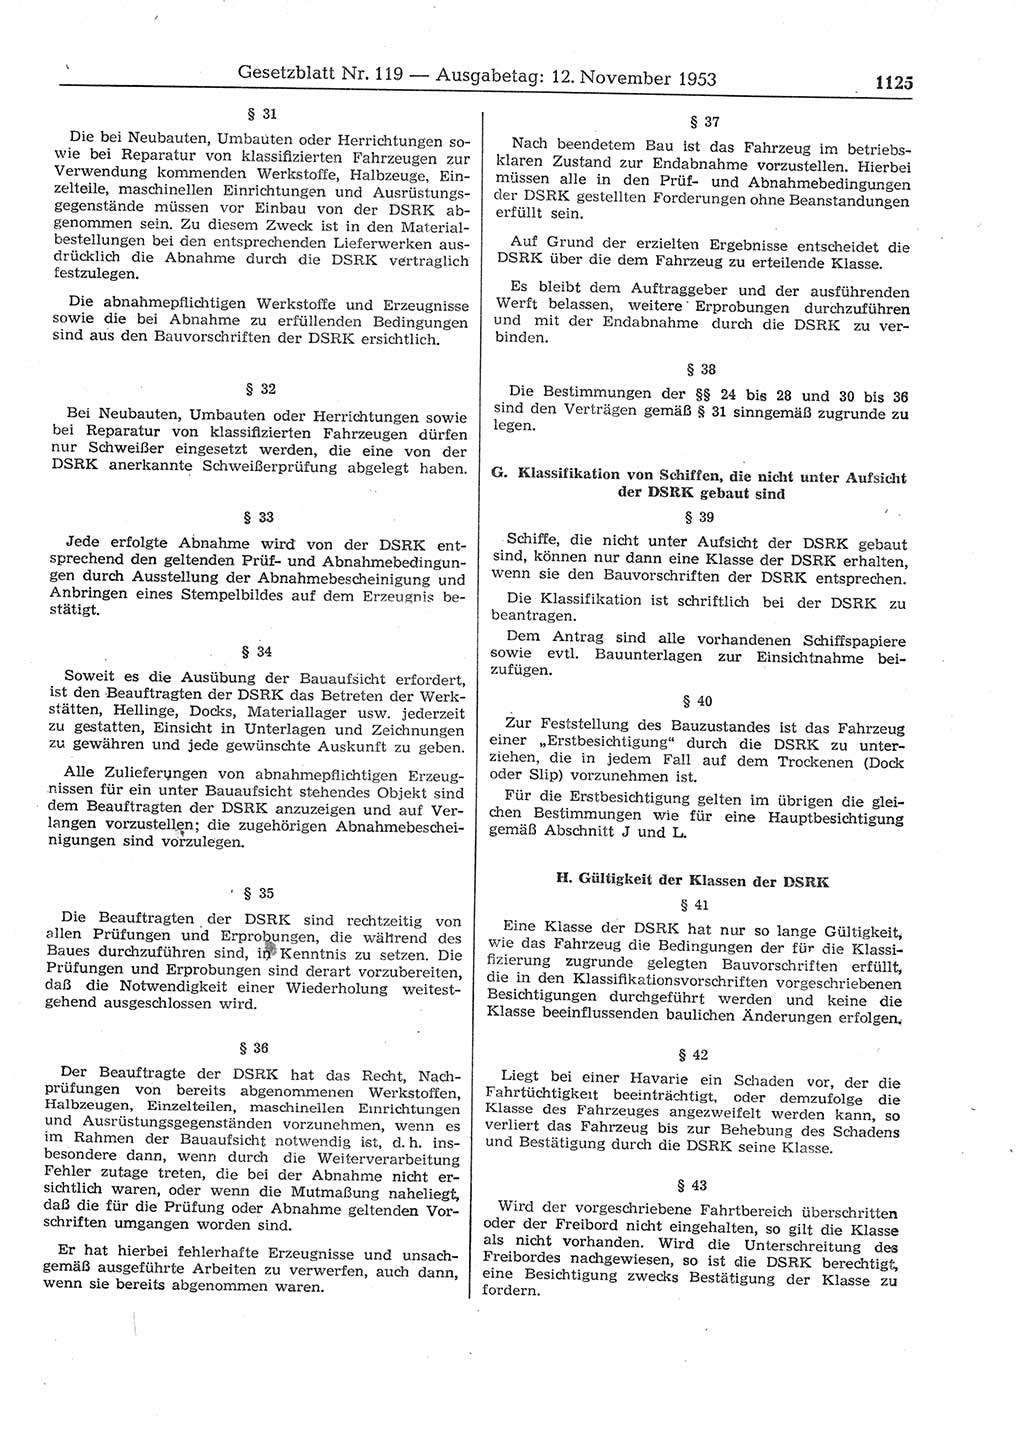 Gesetzblatt (GBl.) der Deutschen Demokratischen Republik (DDR) 1953, Seite 1125 (GBl. DDR 1953, S. 1125)